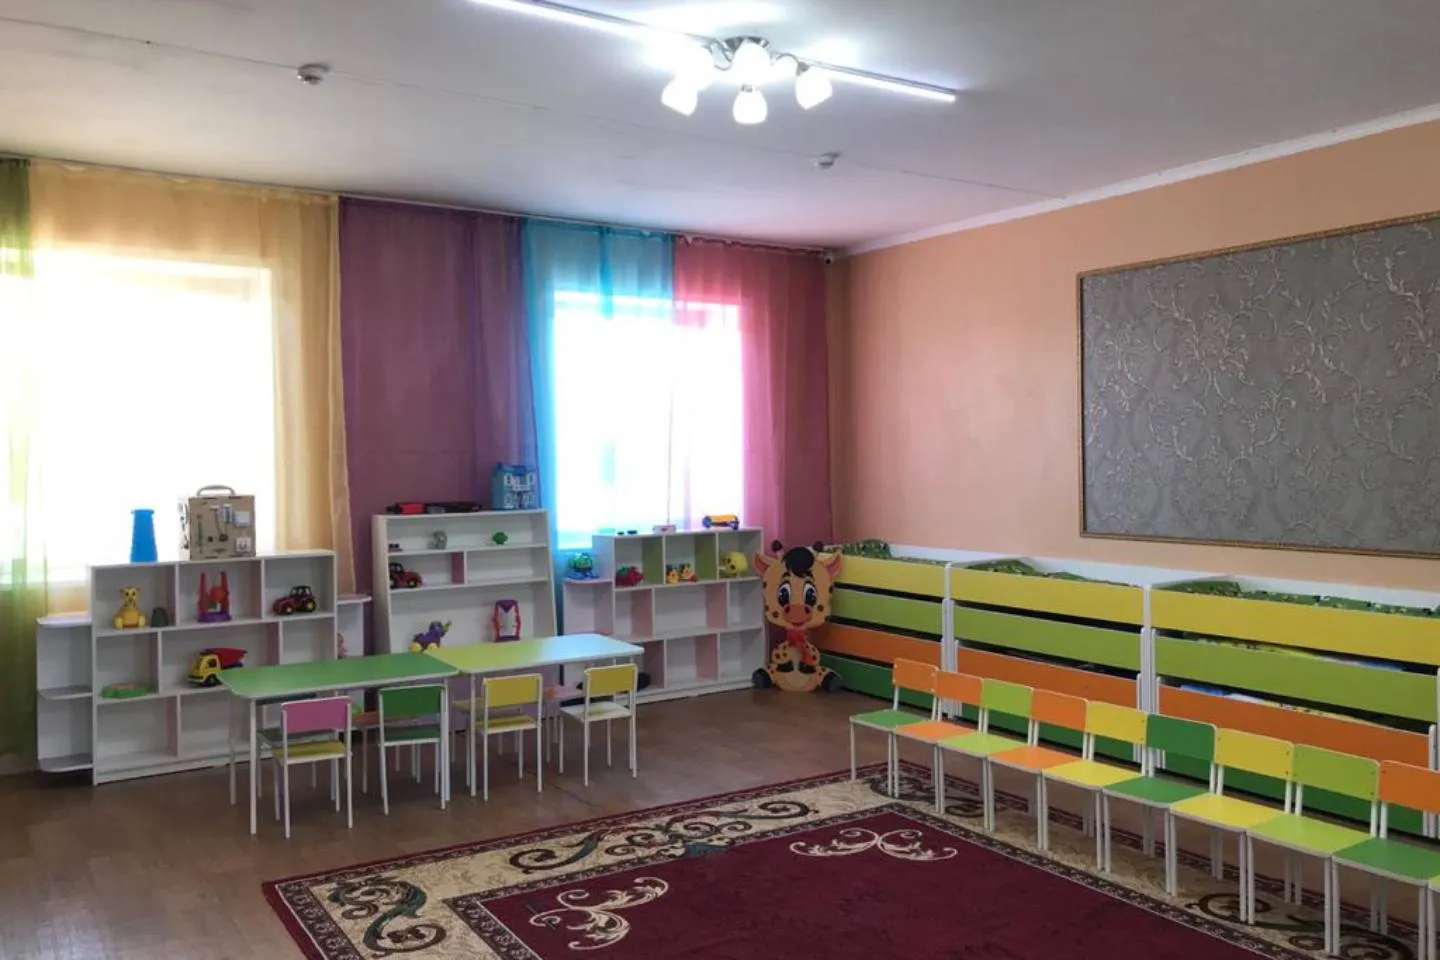 Новости Казахстана / Общество в Казахстане / Зачем нужно отдавать ребенка в детский сад